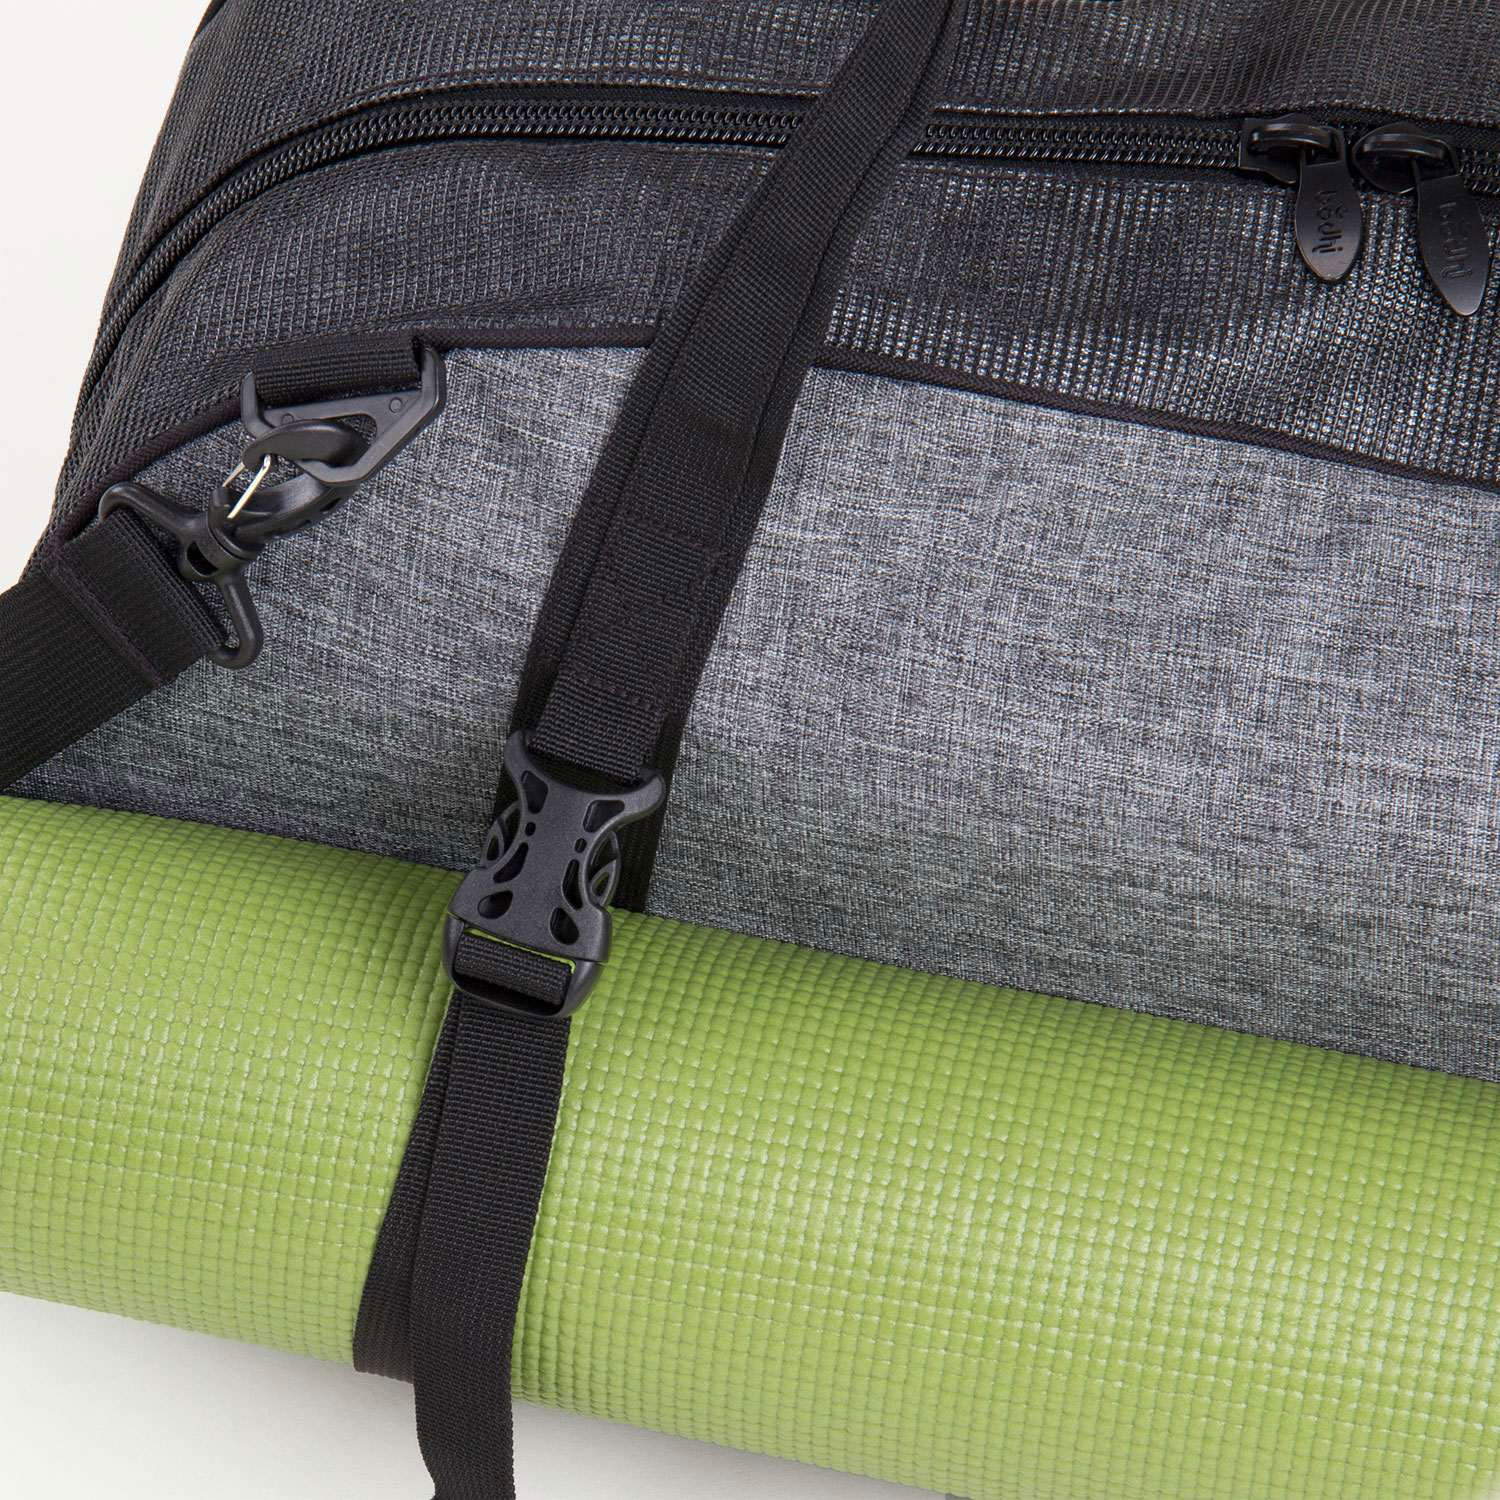 Yoga-Tasche Urban Tote Bag günstig kaufen